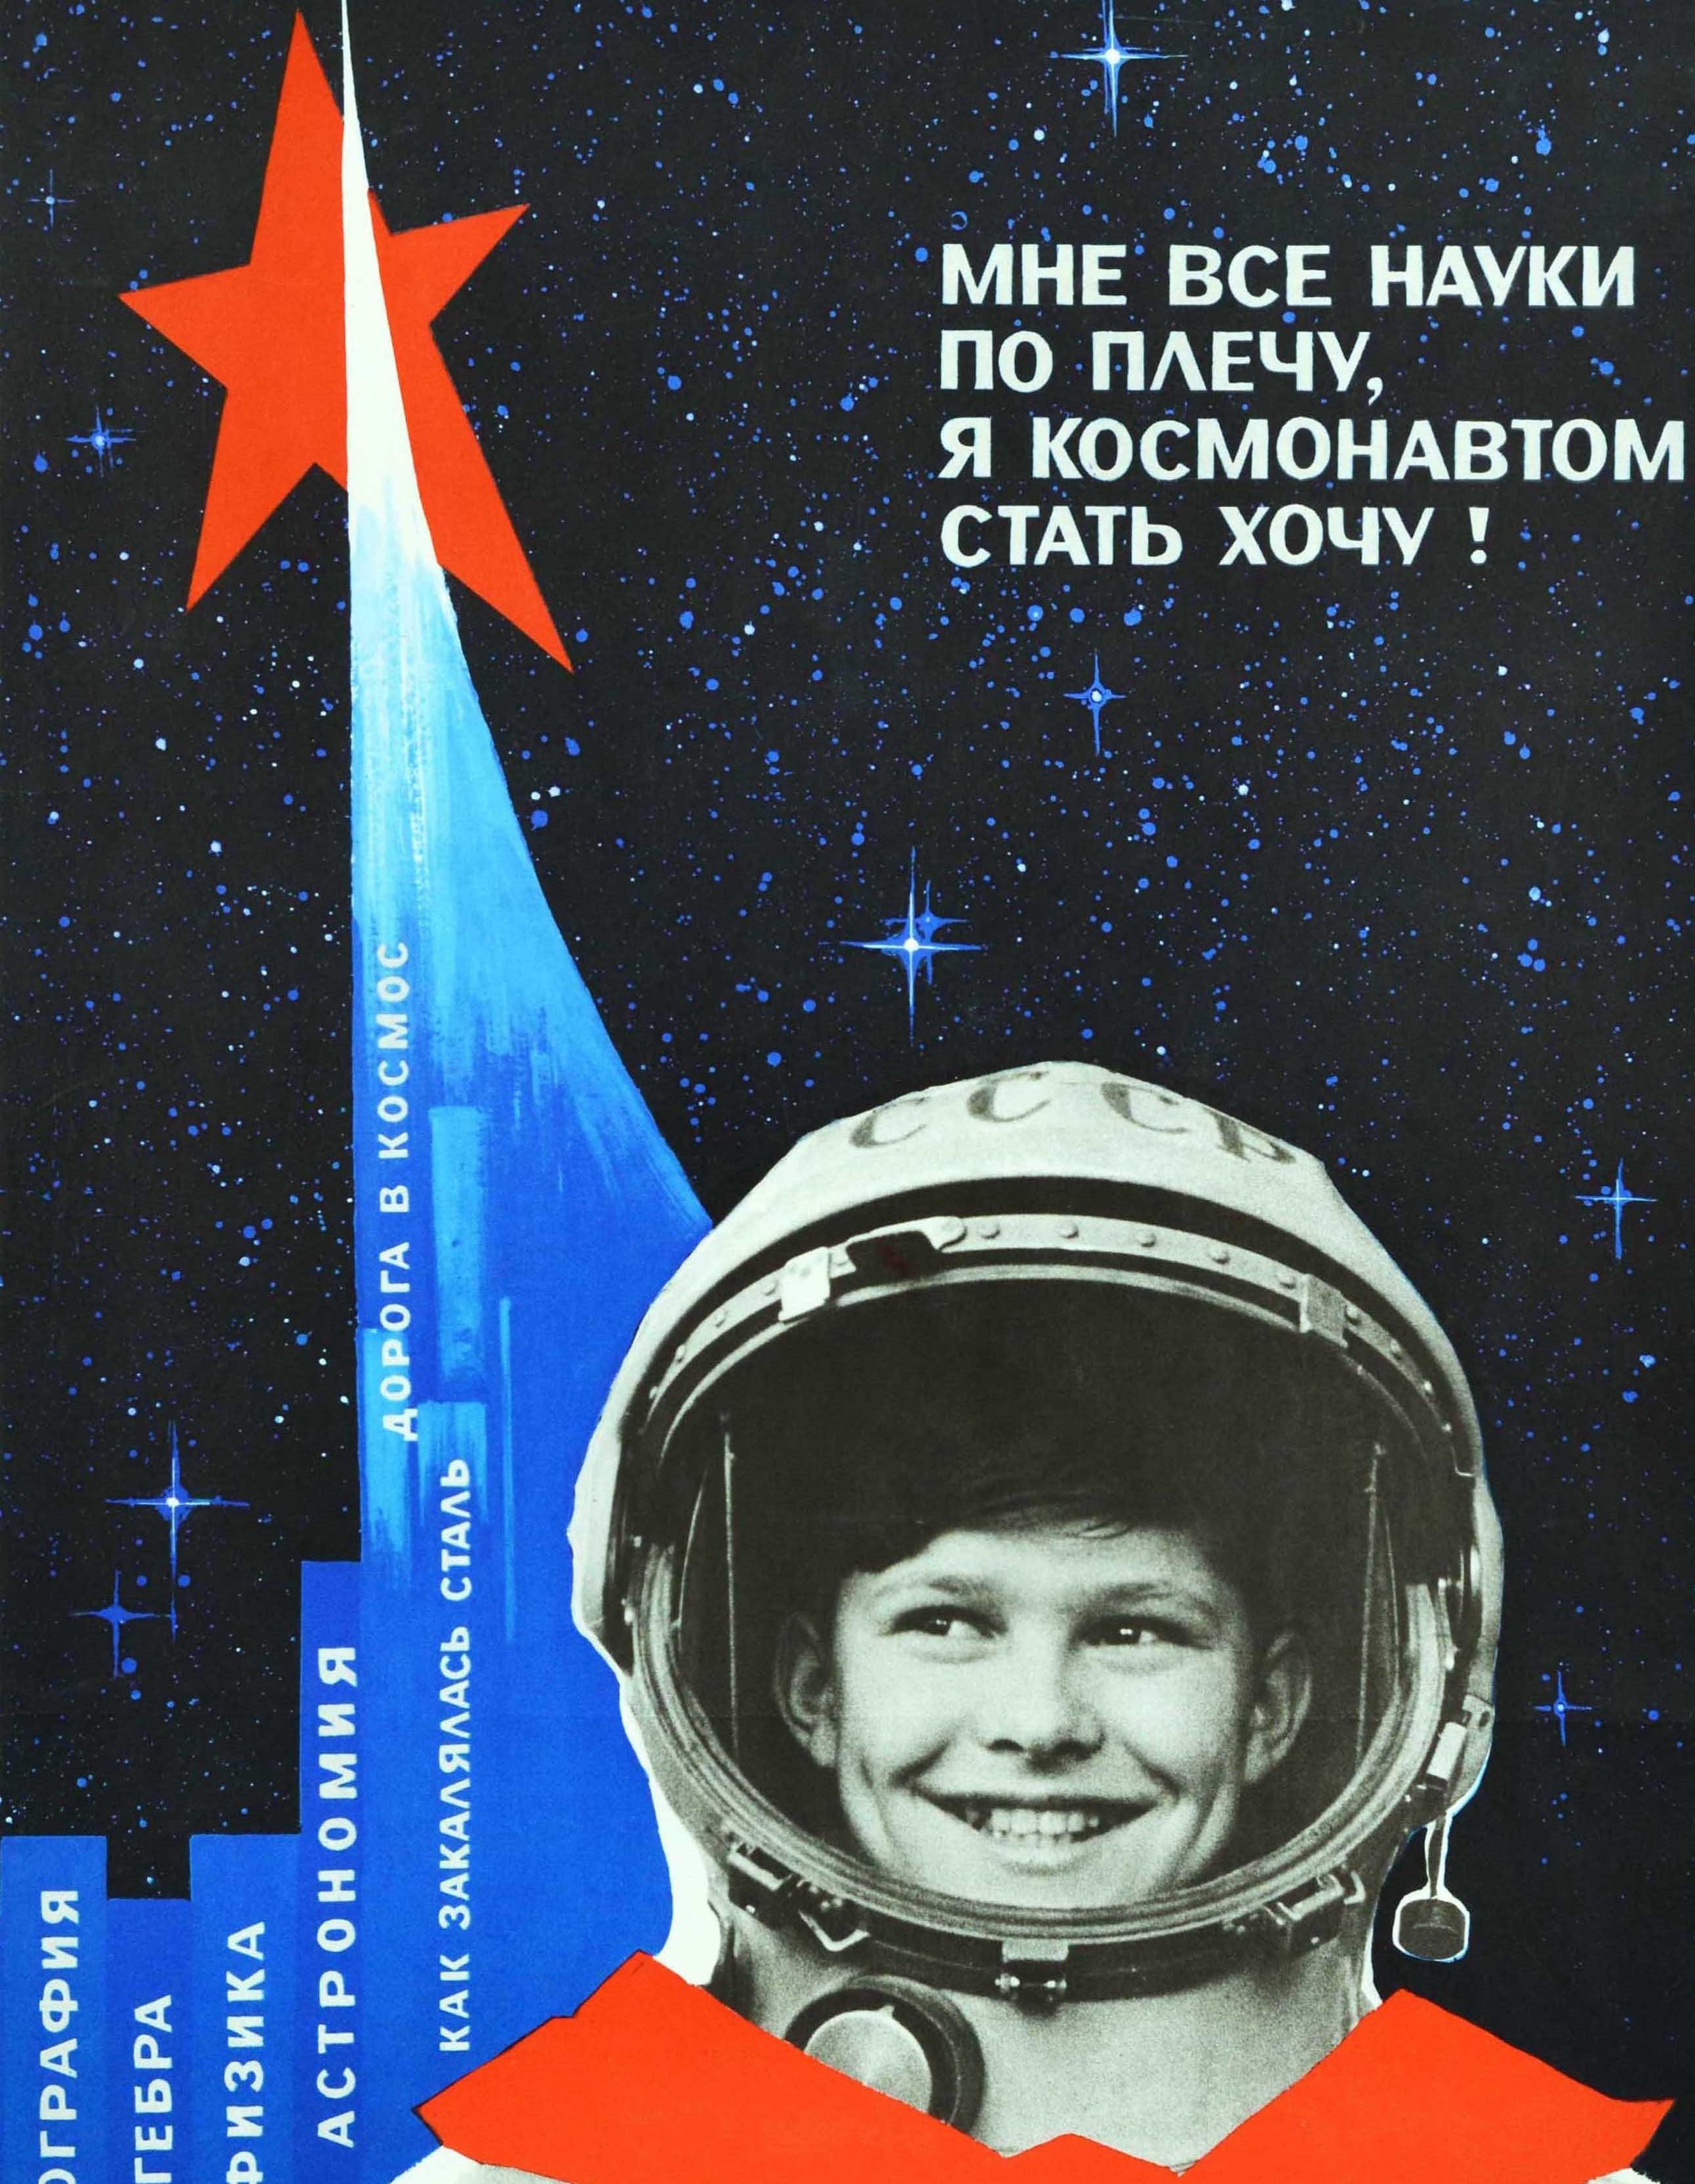 Affiche originale de propagande soviétique vintage sur l'éducation spatiale - Je peux maîtriser toutes les sciences, je veux devenir cosmonaute ! - avec la photographie en noir et blanc d'un garçon souriant vêtu d'une combinaison spatiale de